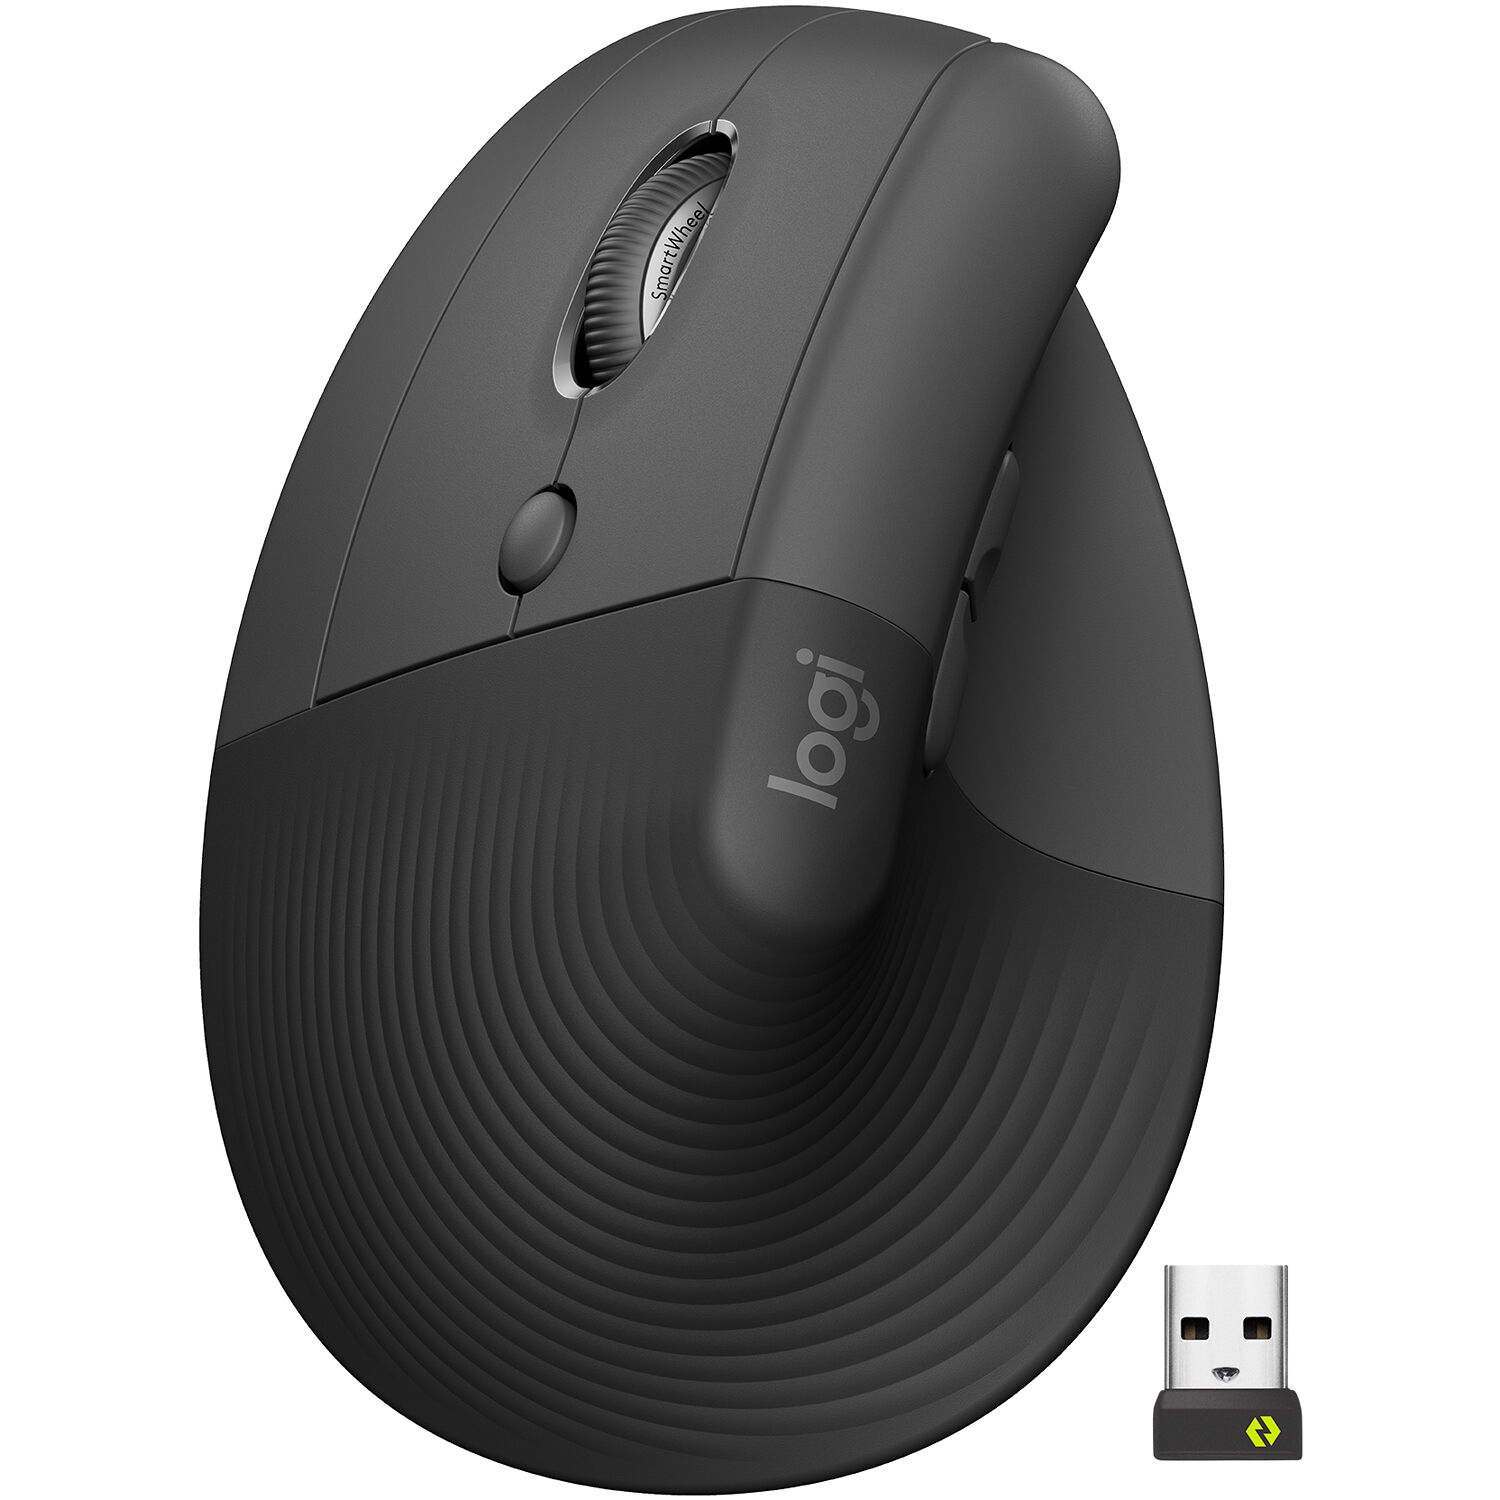 Mouse Logitech Lift Vertical Zurdos Wireless Bluetooth Gris 910-006467